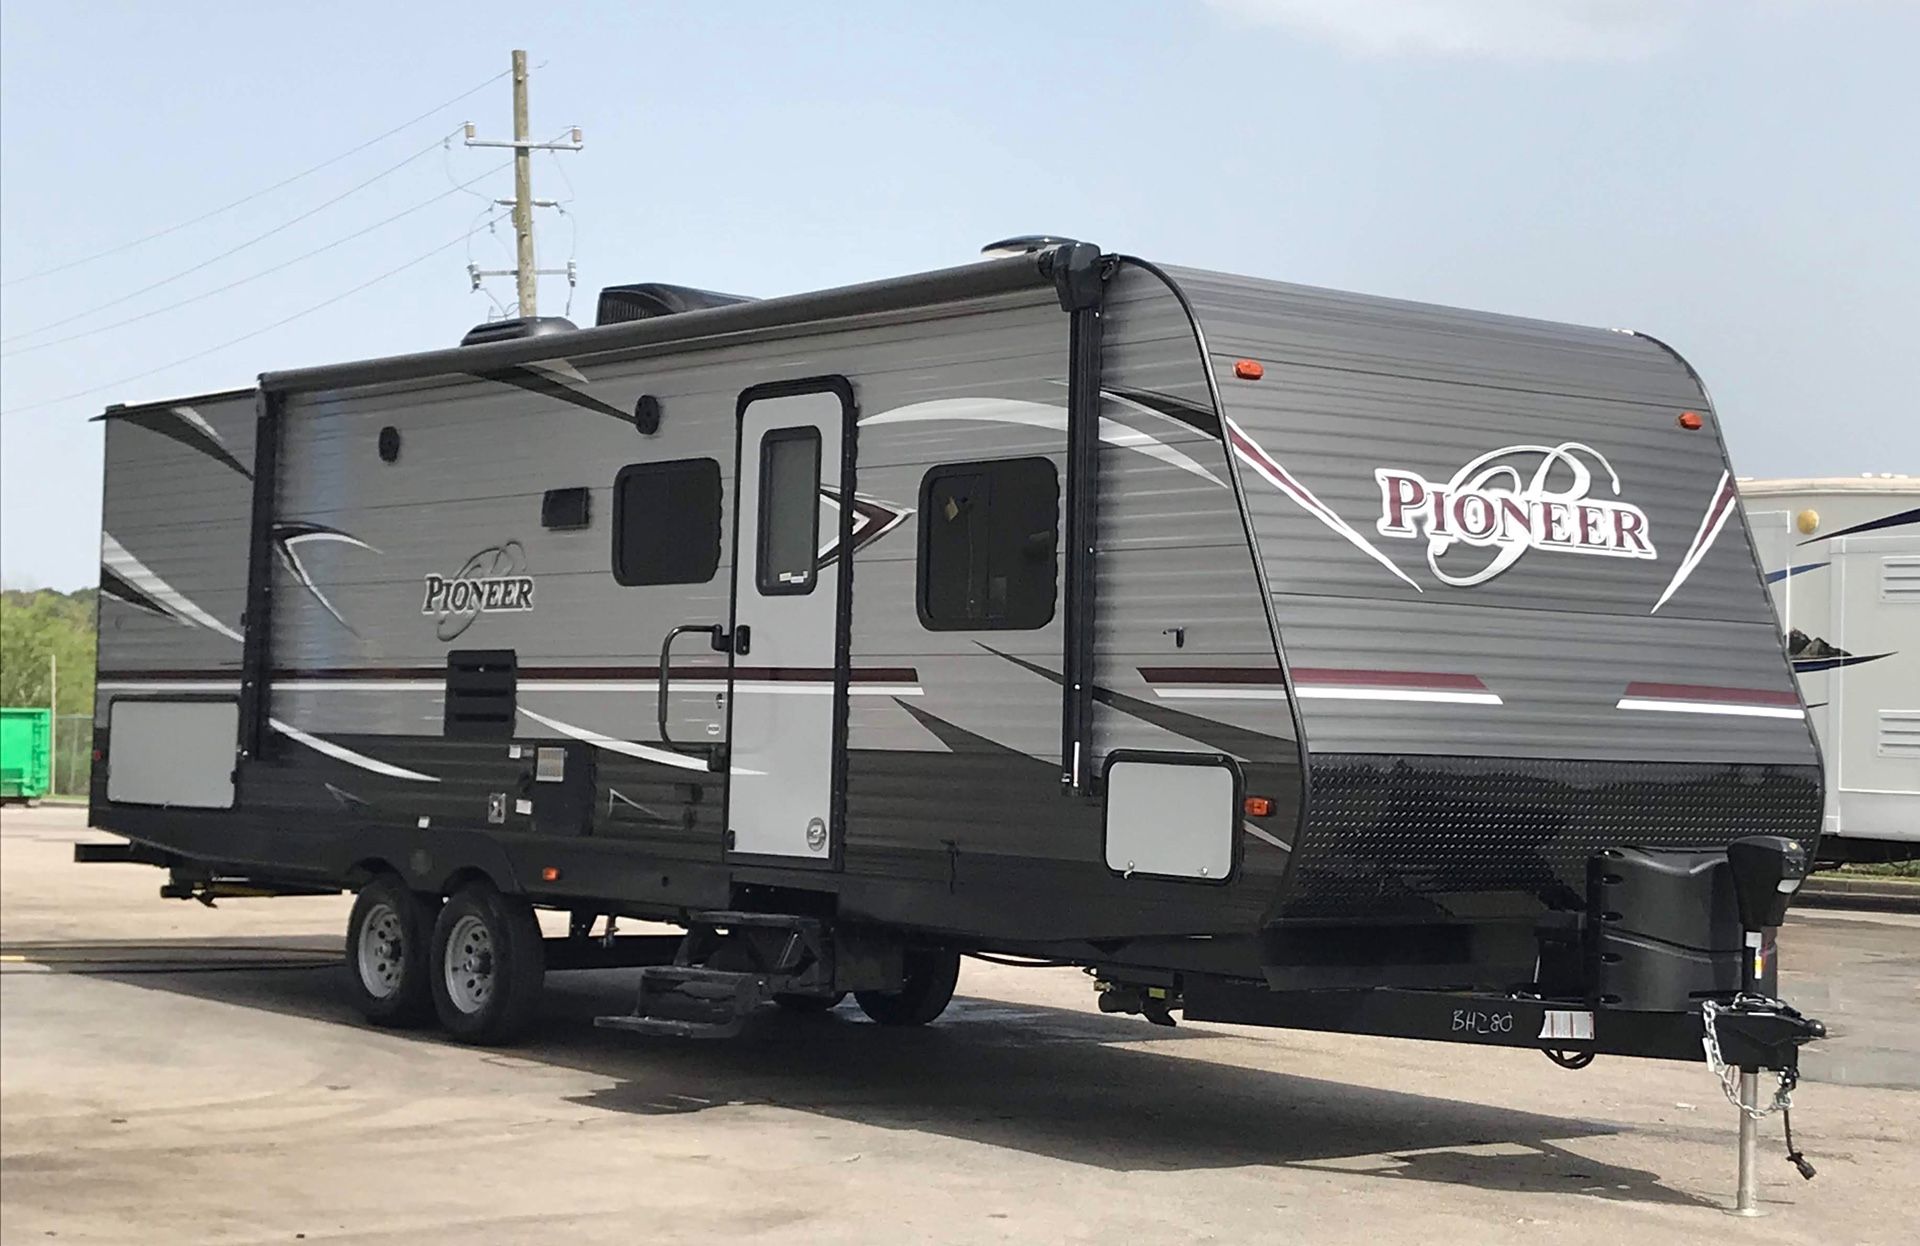 2019 RV Pioneer camper